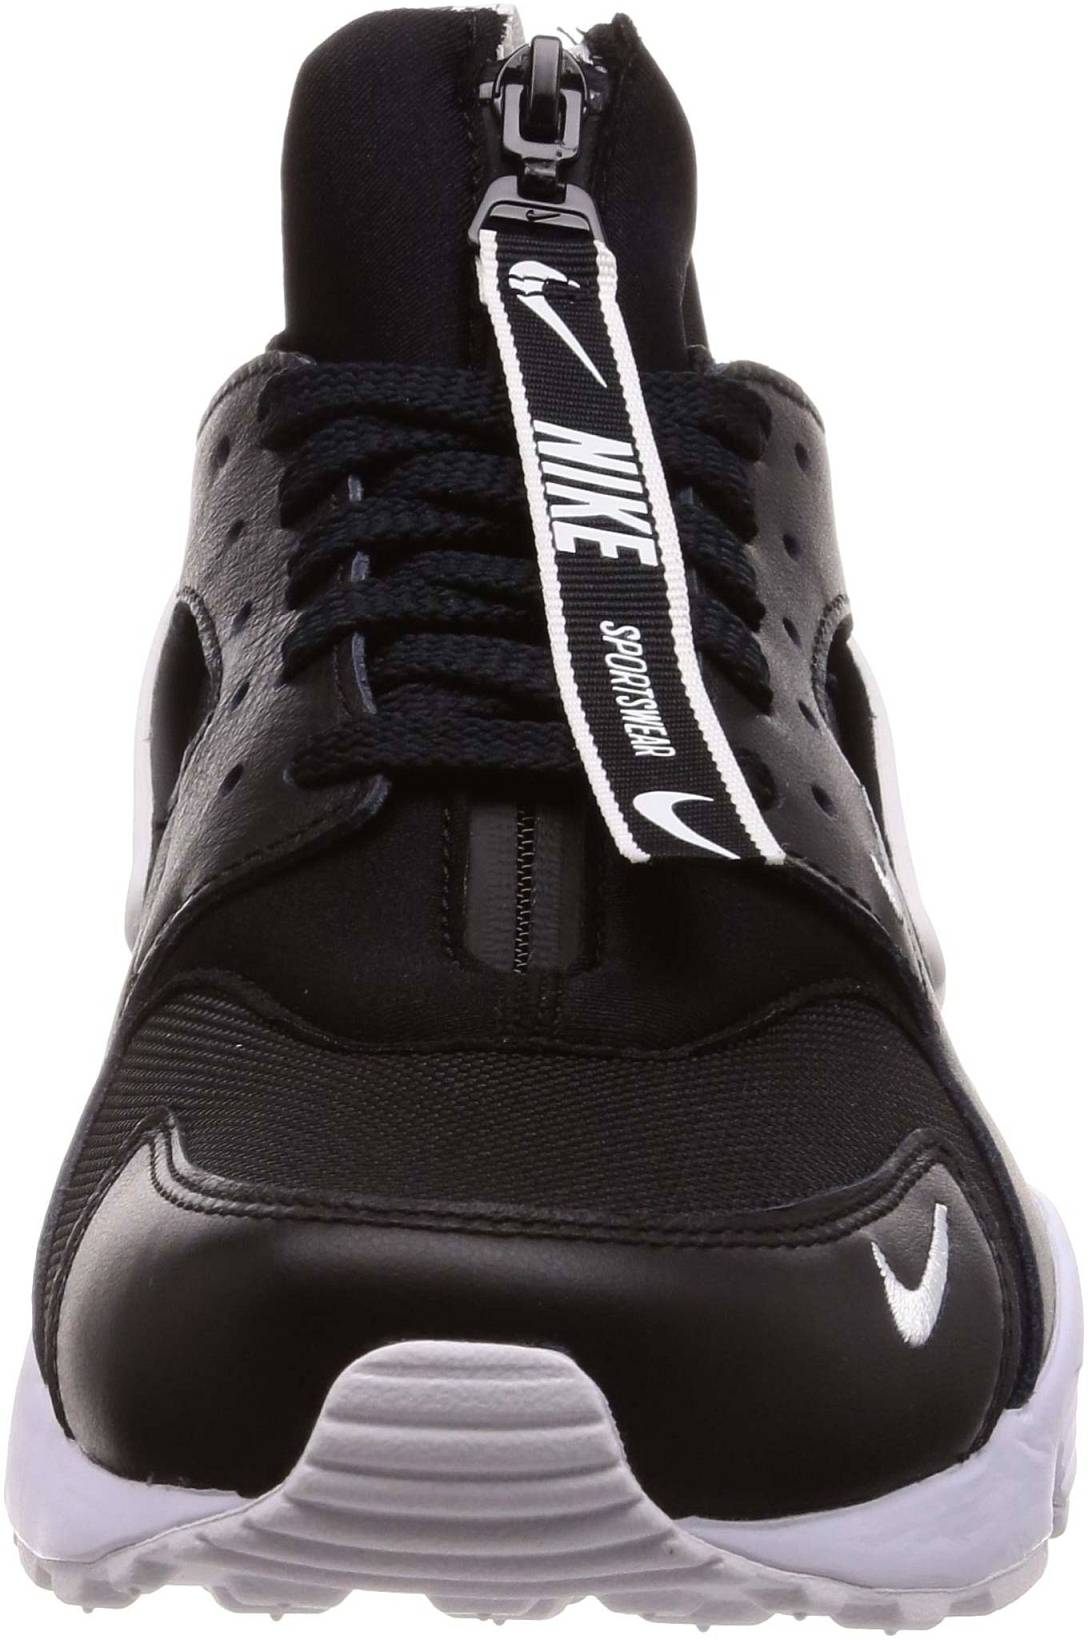 Nike Air Huarache Run Premium Zip Shoes Reviews